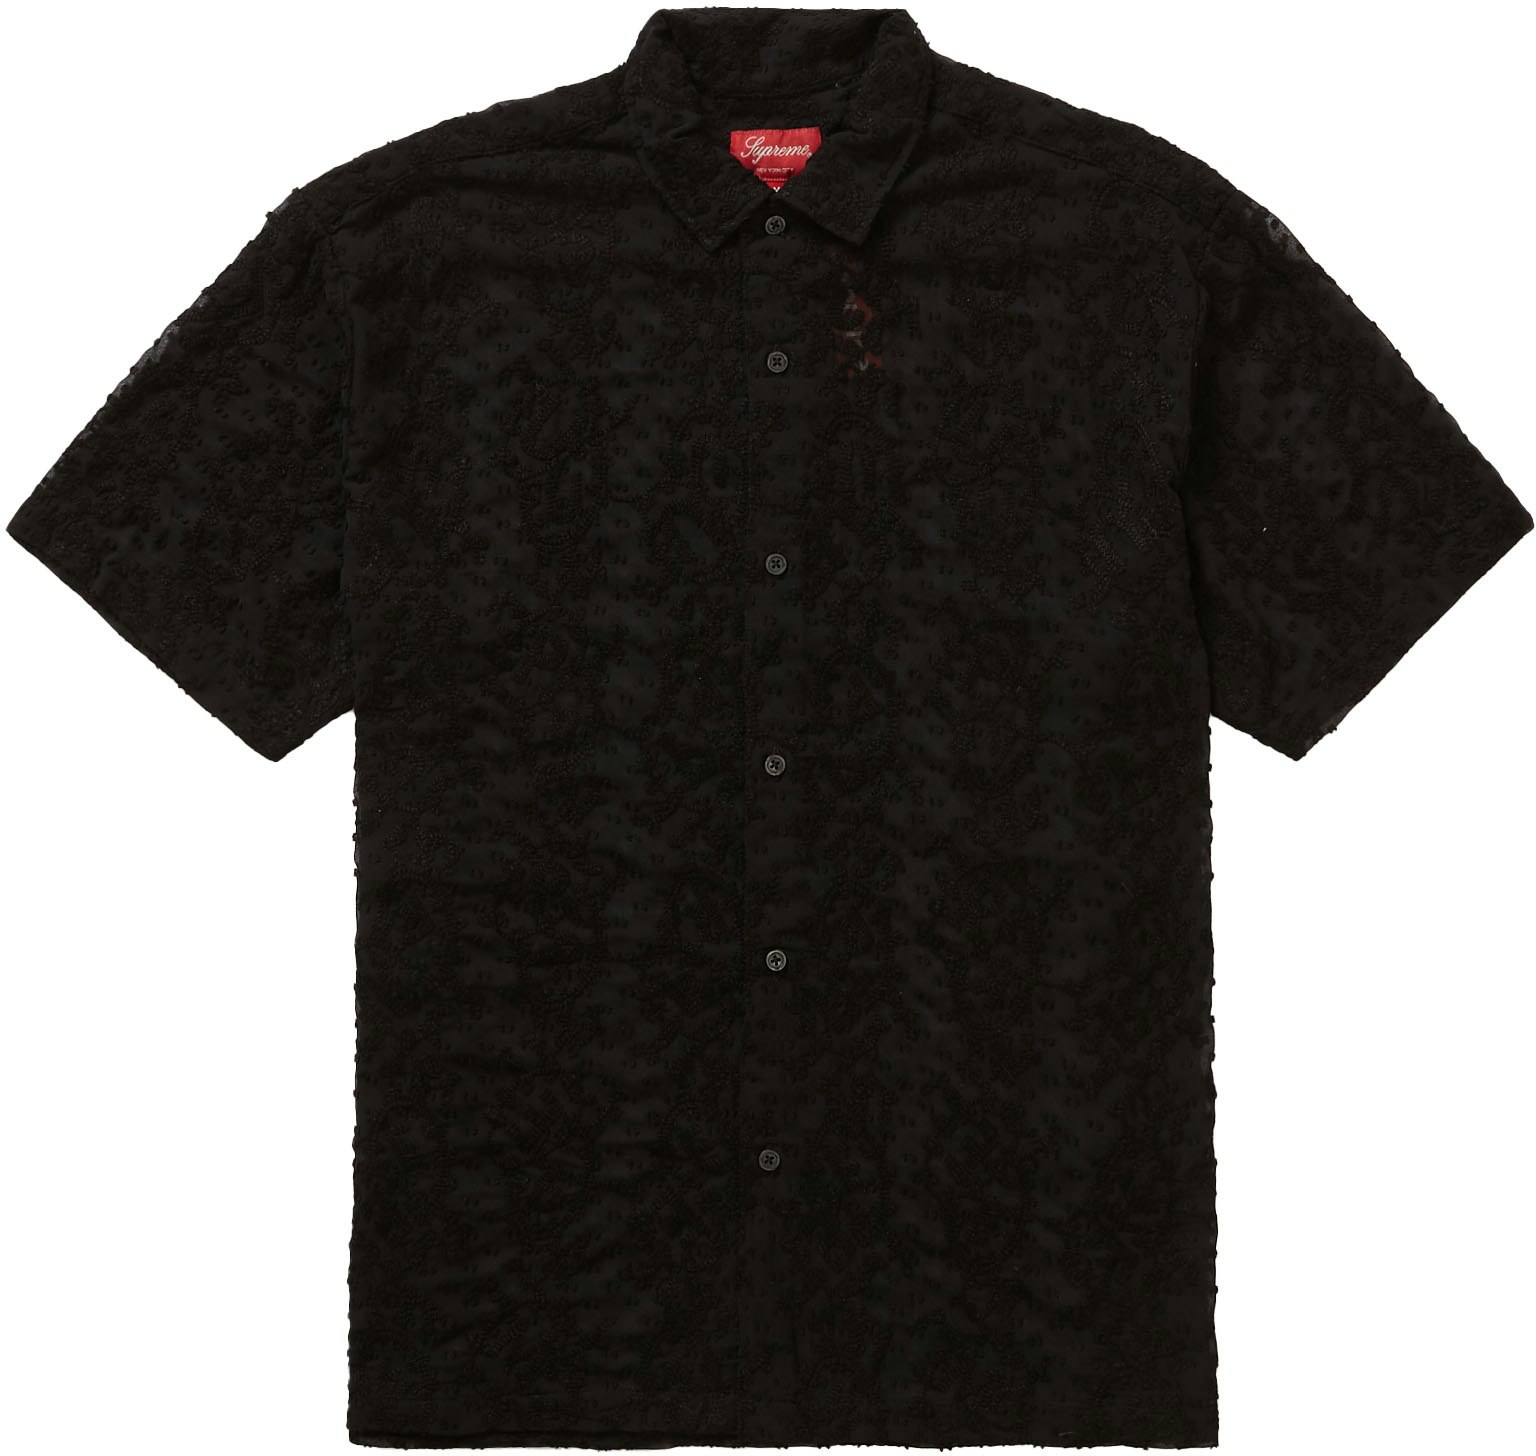 Supreme Chainstitch Chiffon S/S Shirt Black - Novelship